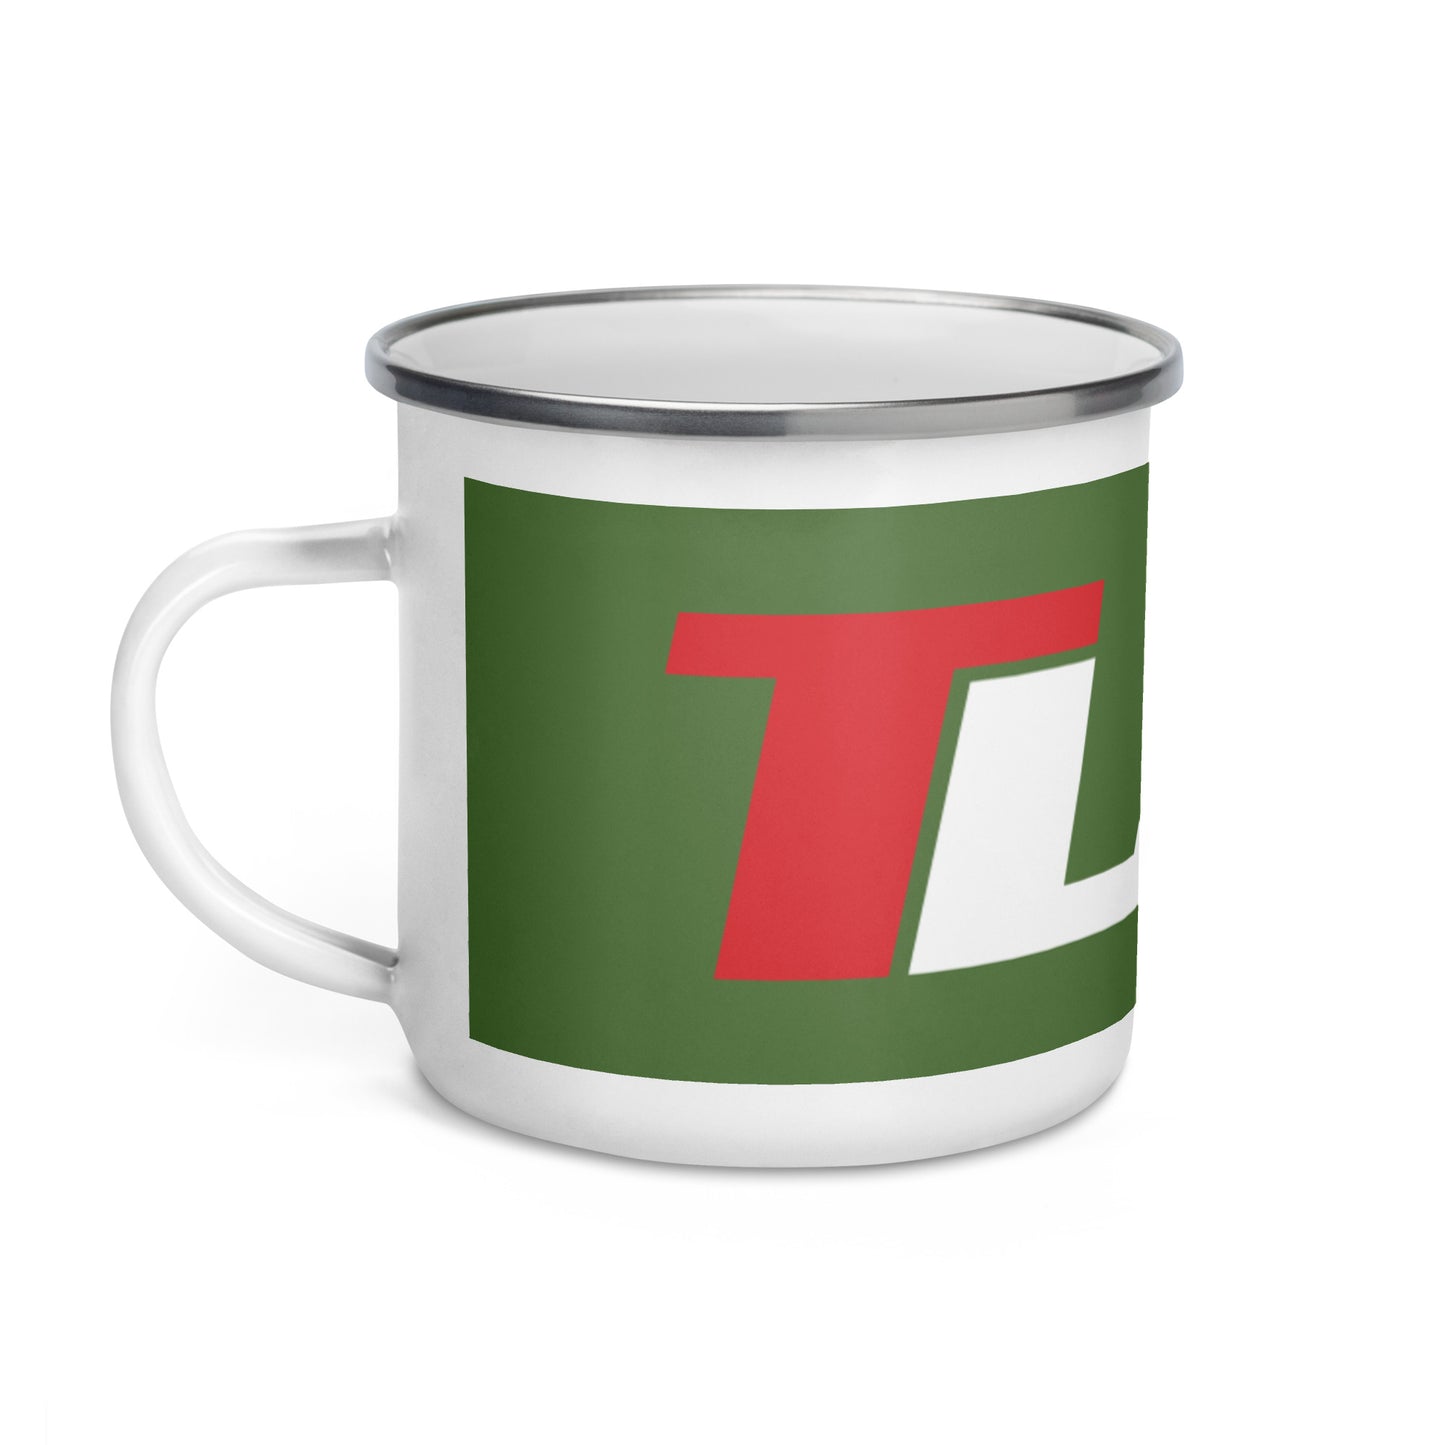 TLAH Raceway Travel Mug